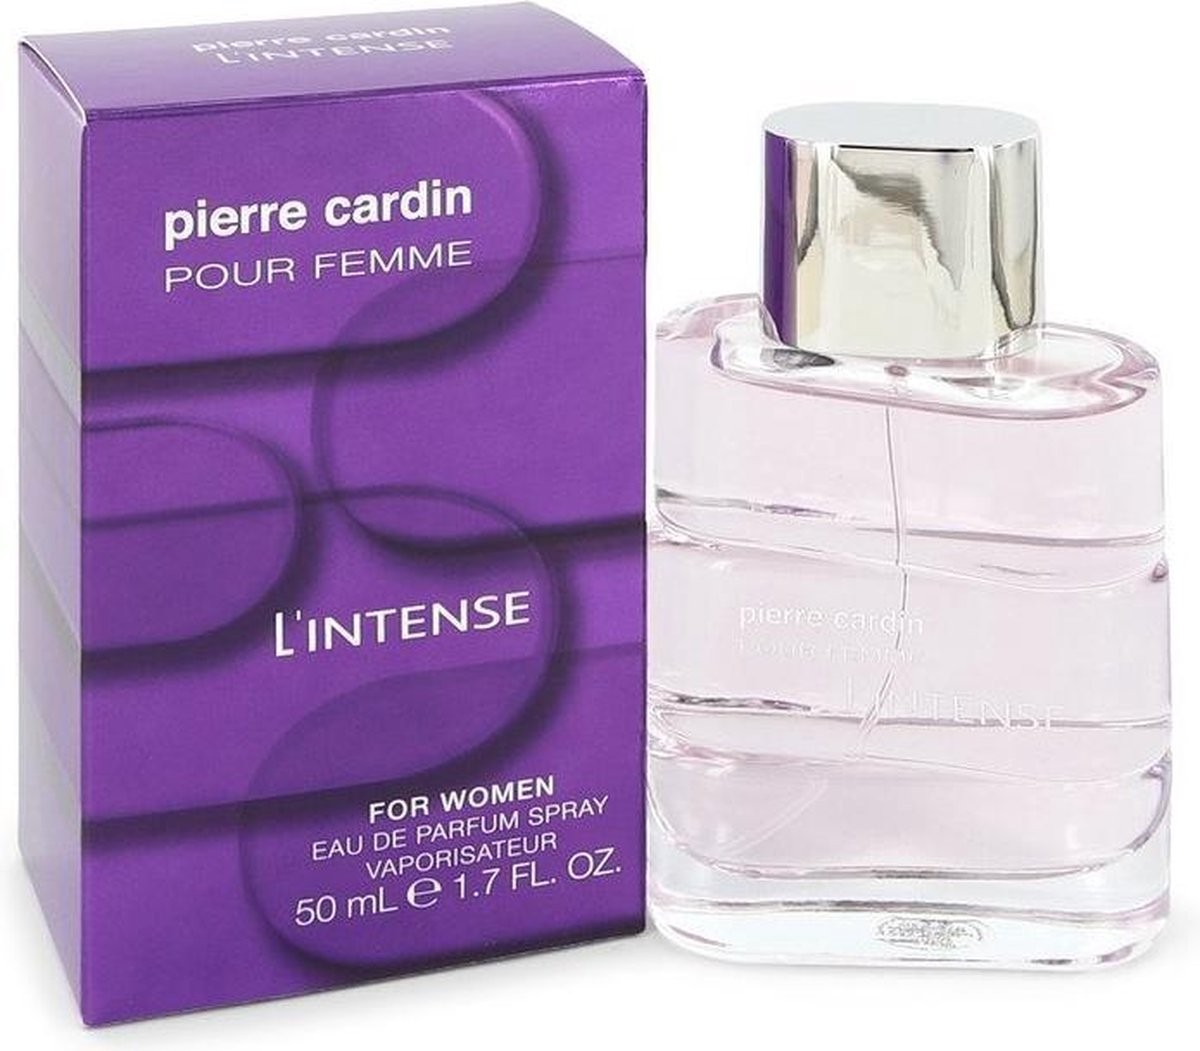 Pierre Cardin Pour Femme L'intense by Pierre Cardin 50 ml - Eau De Parfum Spray